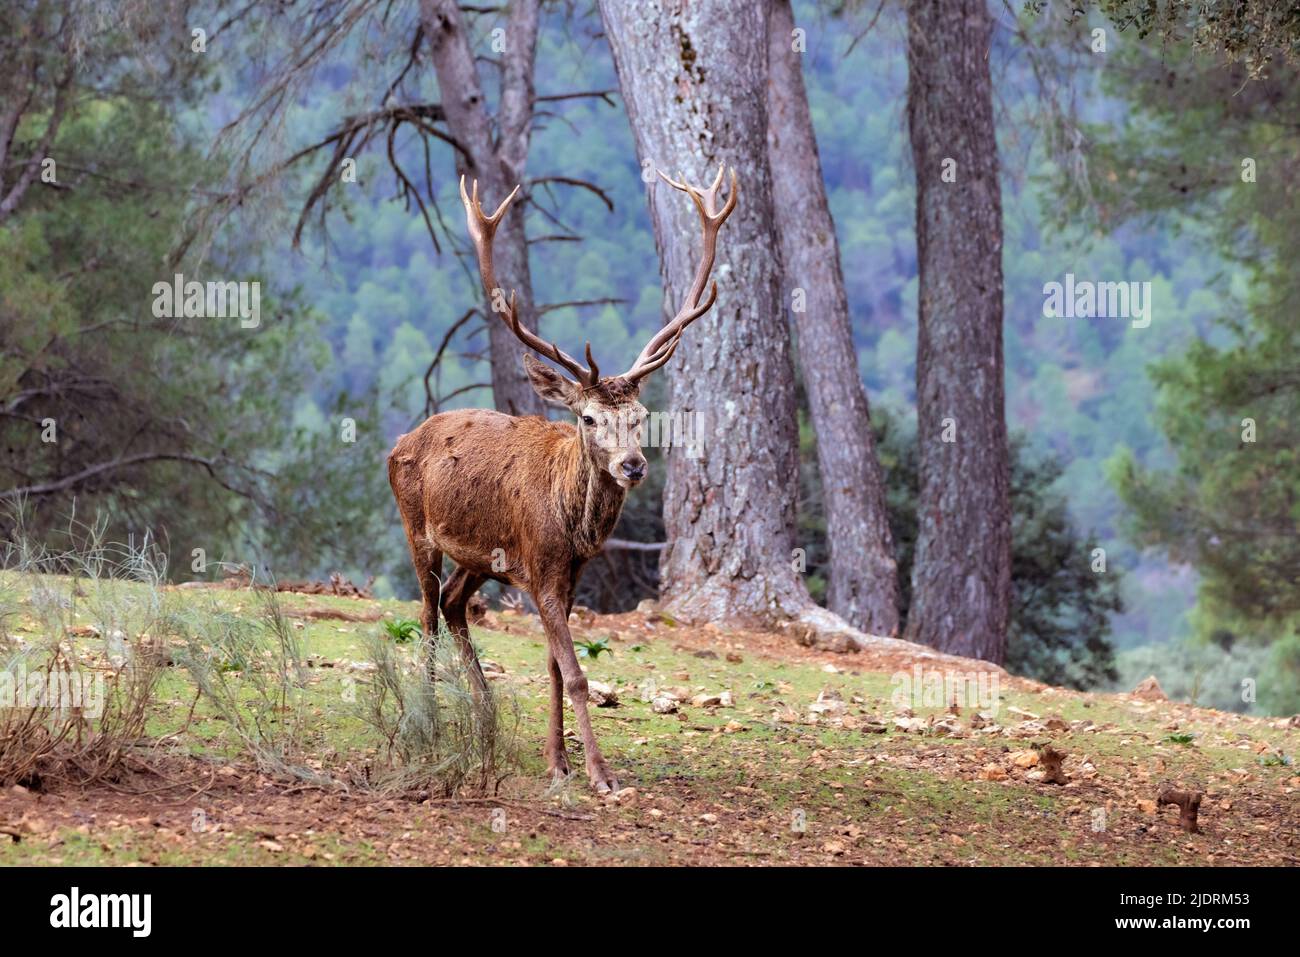 Ciervo rojo español (Cervus elaphus hispanicus) en Sierras de Cazorla, Parque Natural Segura y Las Villas, provincia de Jaén, Andalucía, sur de España. Foto de stock